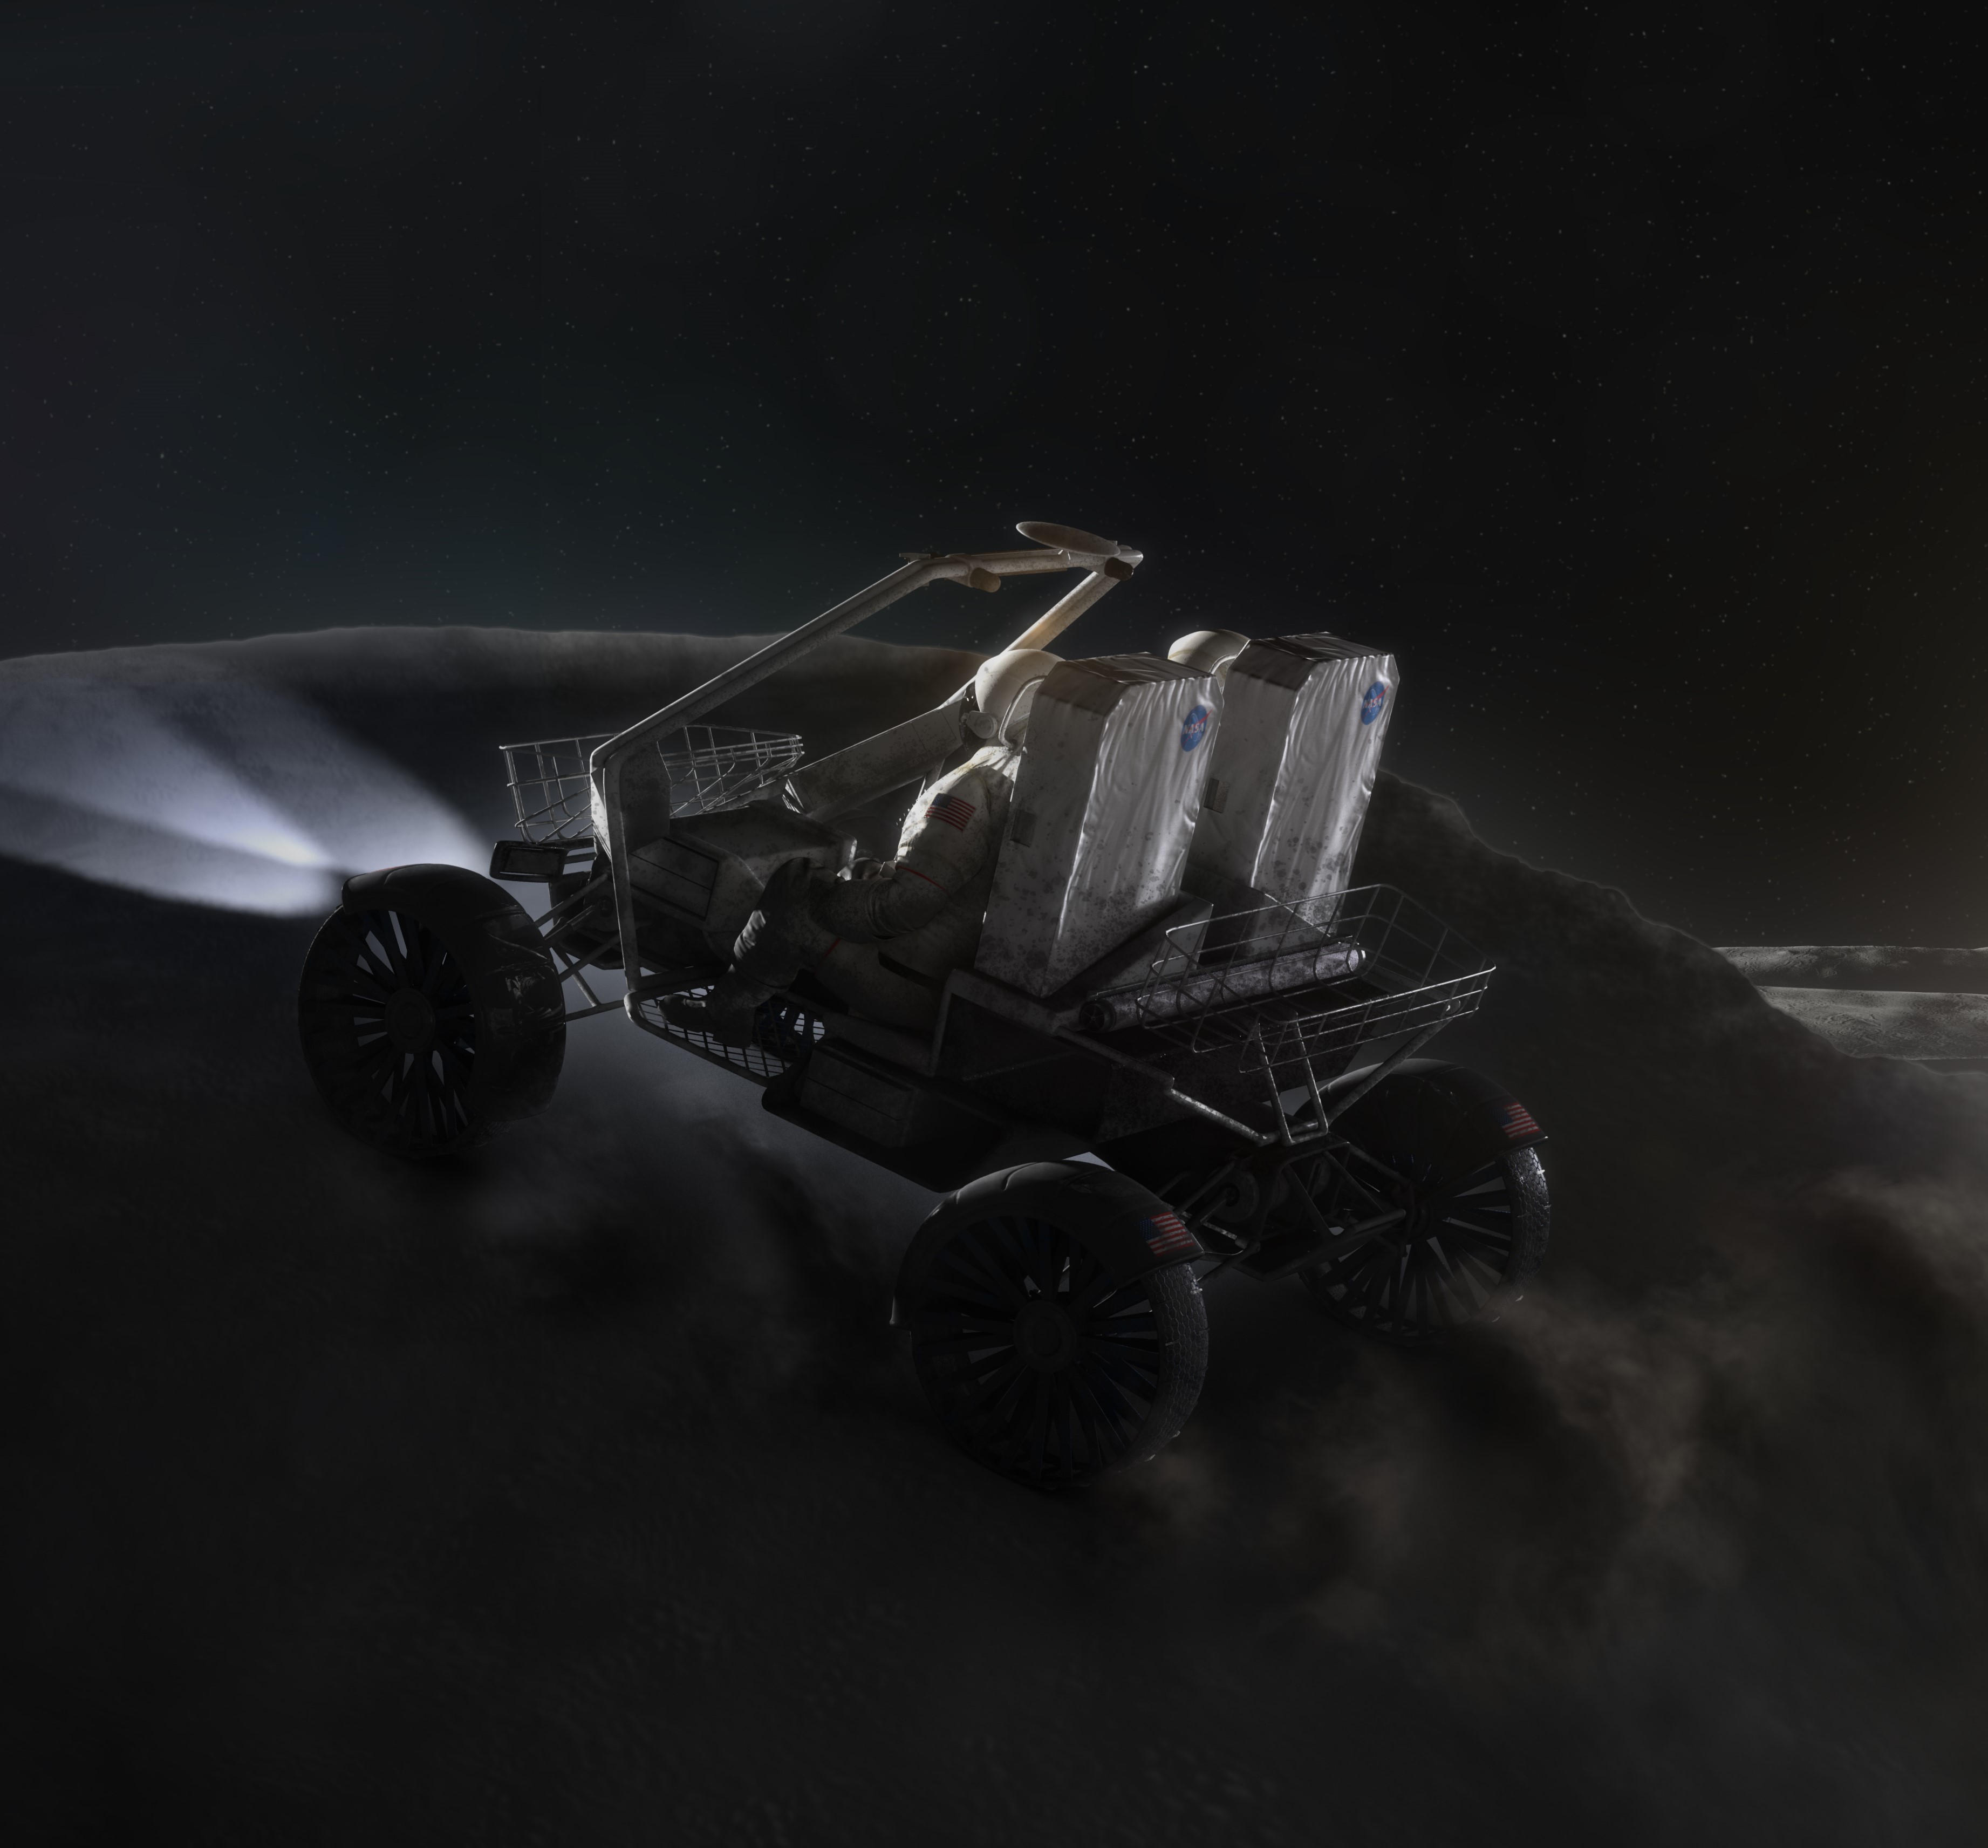 La NASA attend des propositions commerciales pour sa future Jeep lunaire